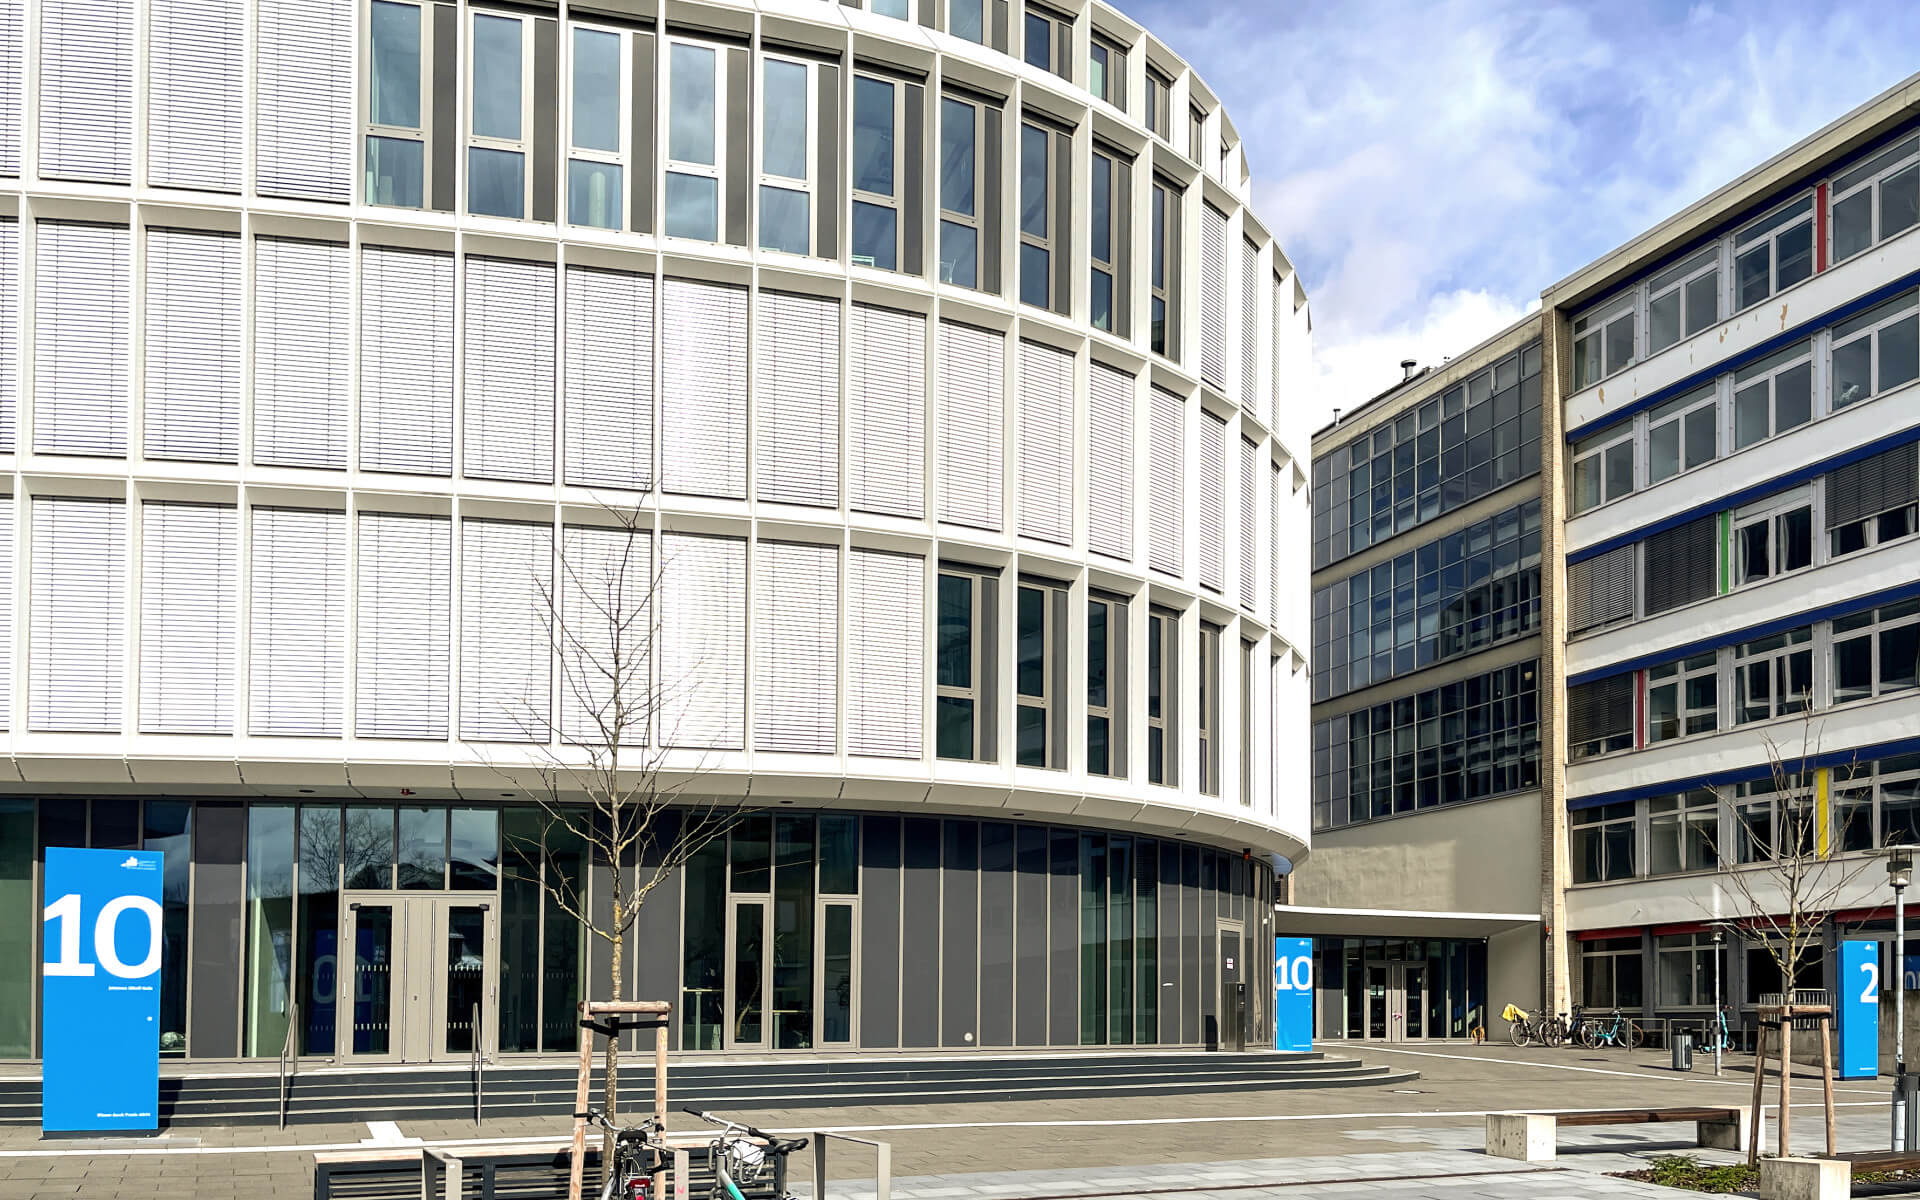 Frankfurt University OrientierungssystemAußenansicht mit 3 Stelen